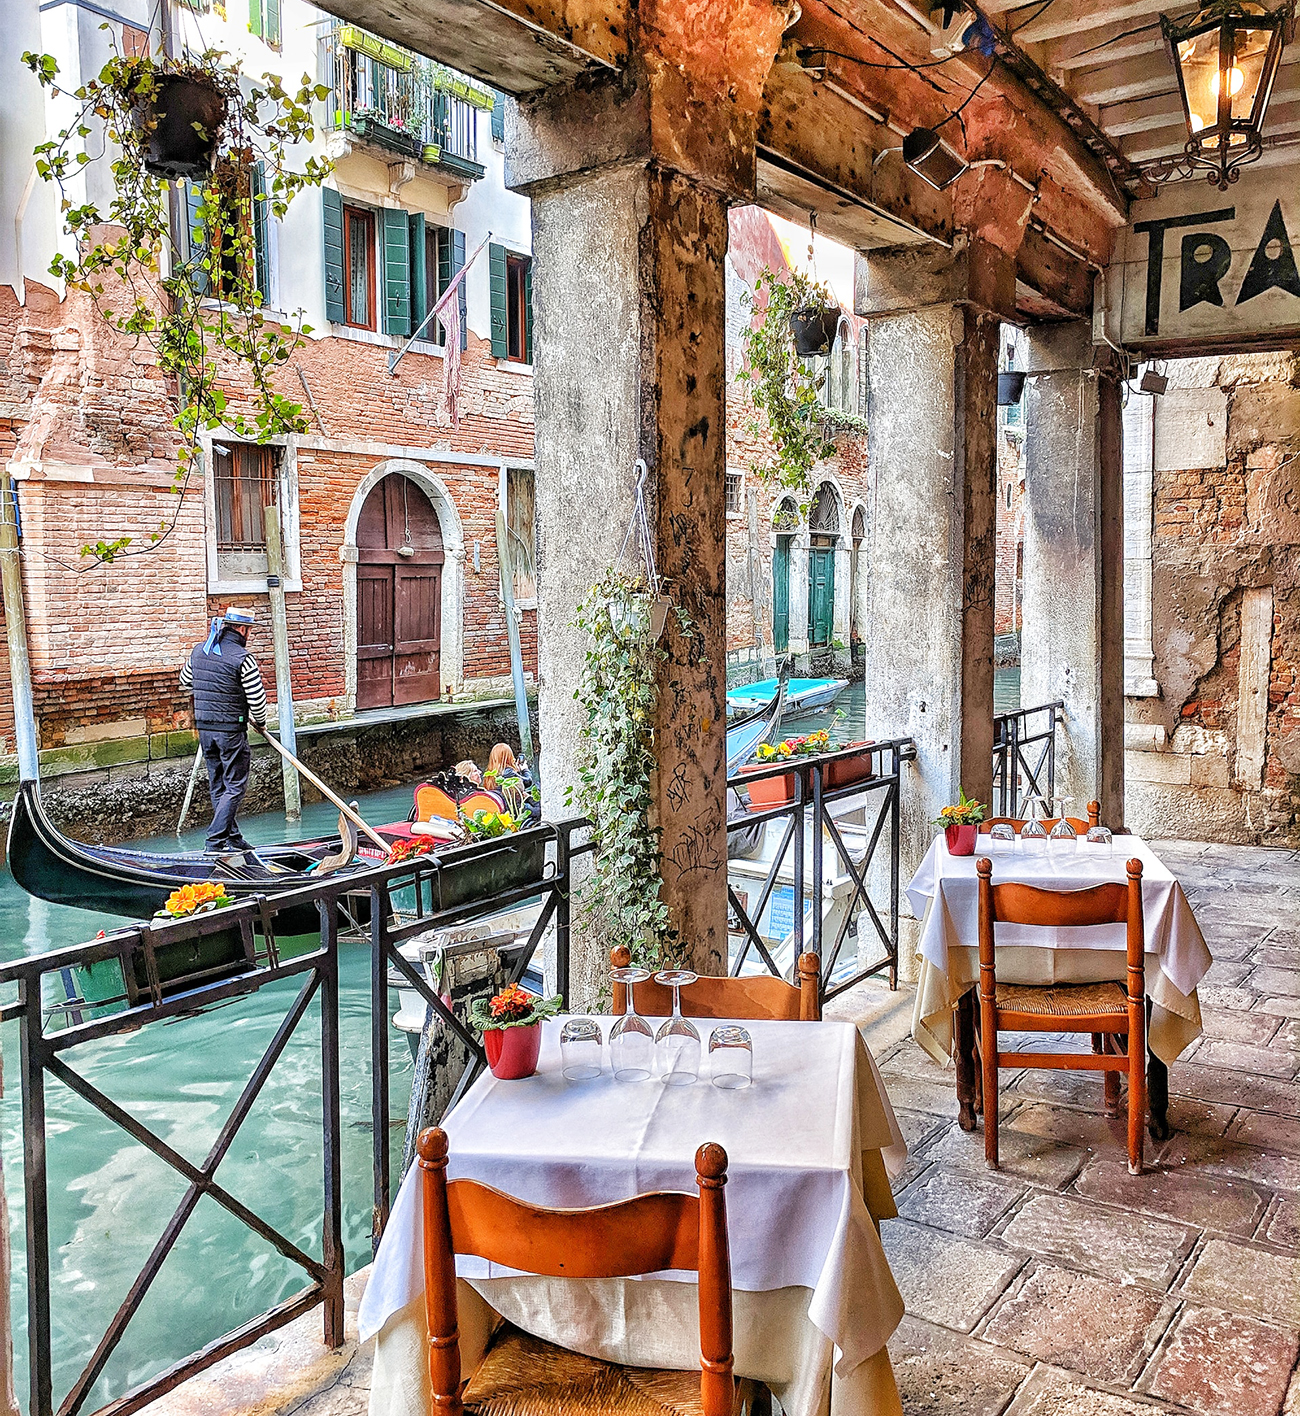 מסעדה על גדת תעלה בוונציה. צילום: Igor Oliyarnik